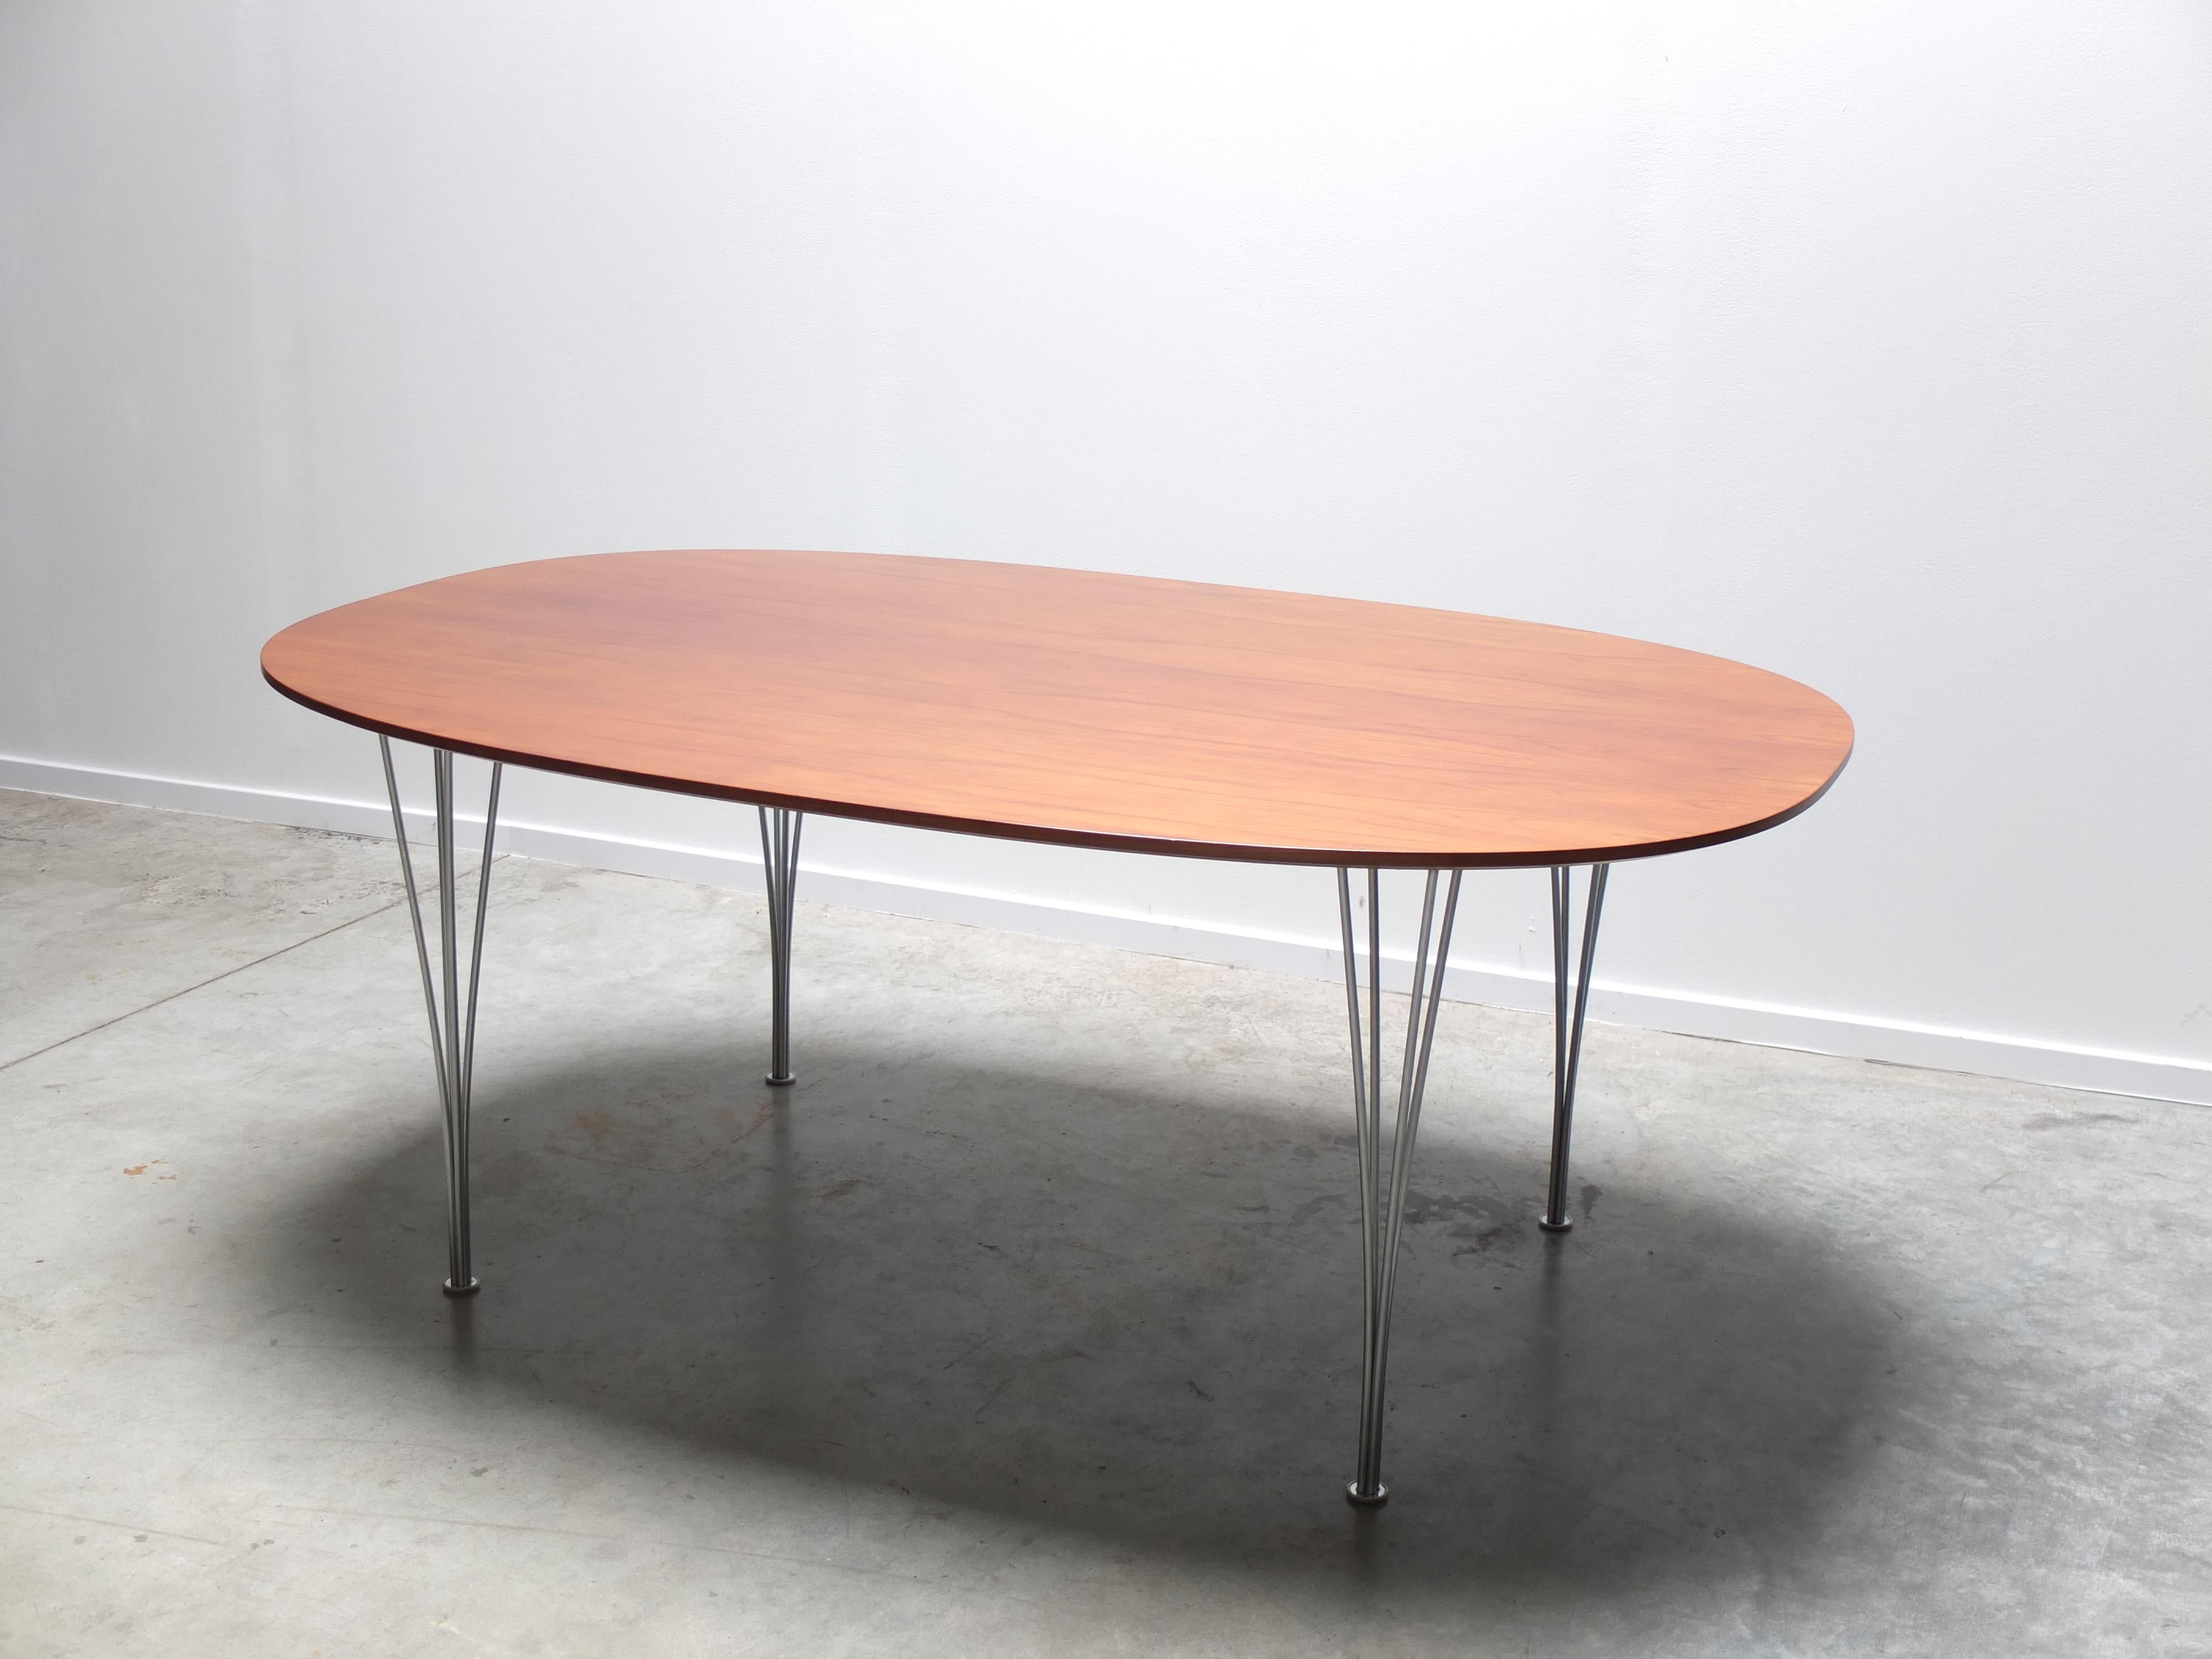 Tisch „Superellipse“ aus Nussbaumholz von Piet Hein & Bruno Mathsson für Fritz Hansen, 1960 (Skandinavische Moderne)